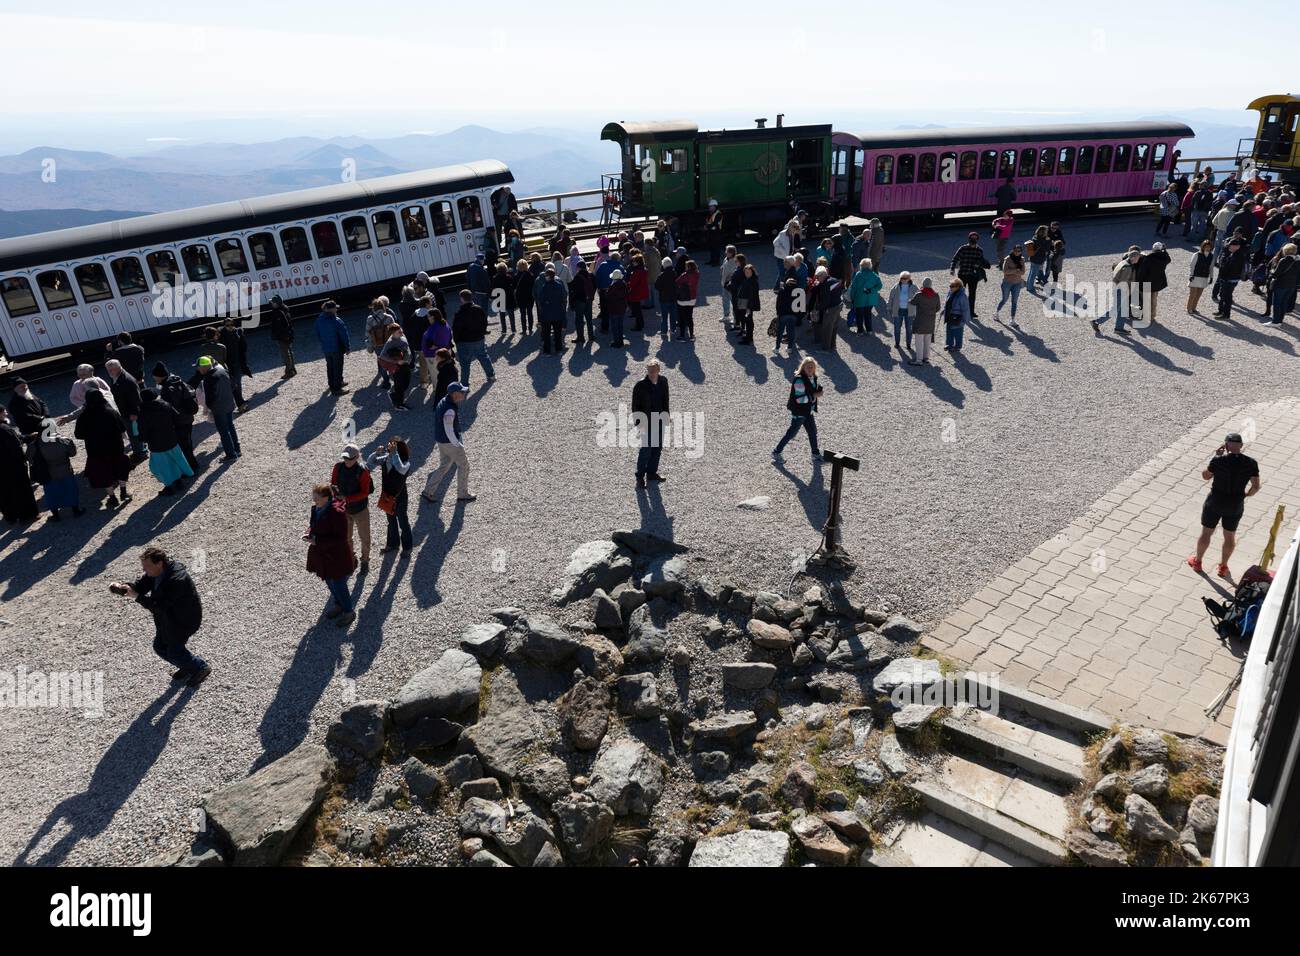 Auf dem Gipfel der Mount Washington Cog Railway warten viele Passagiere, um in Züge zu steigen Stockfoto